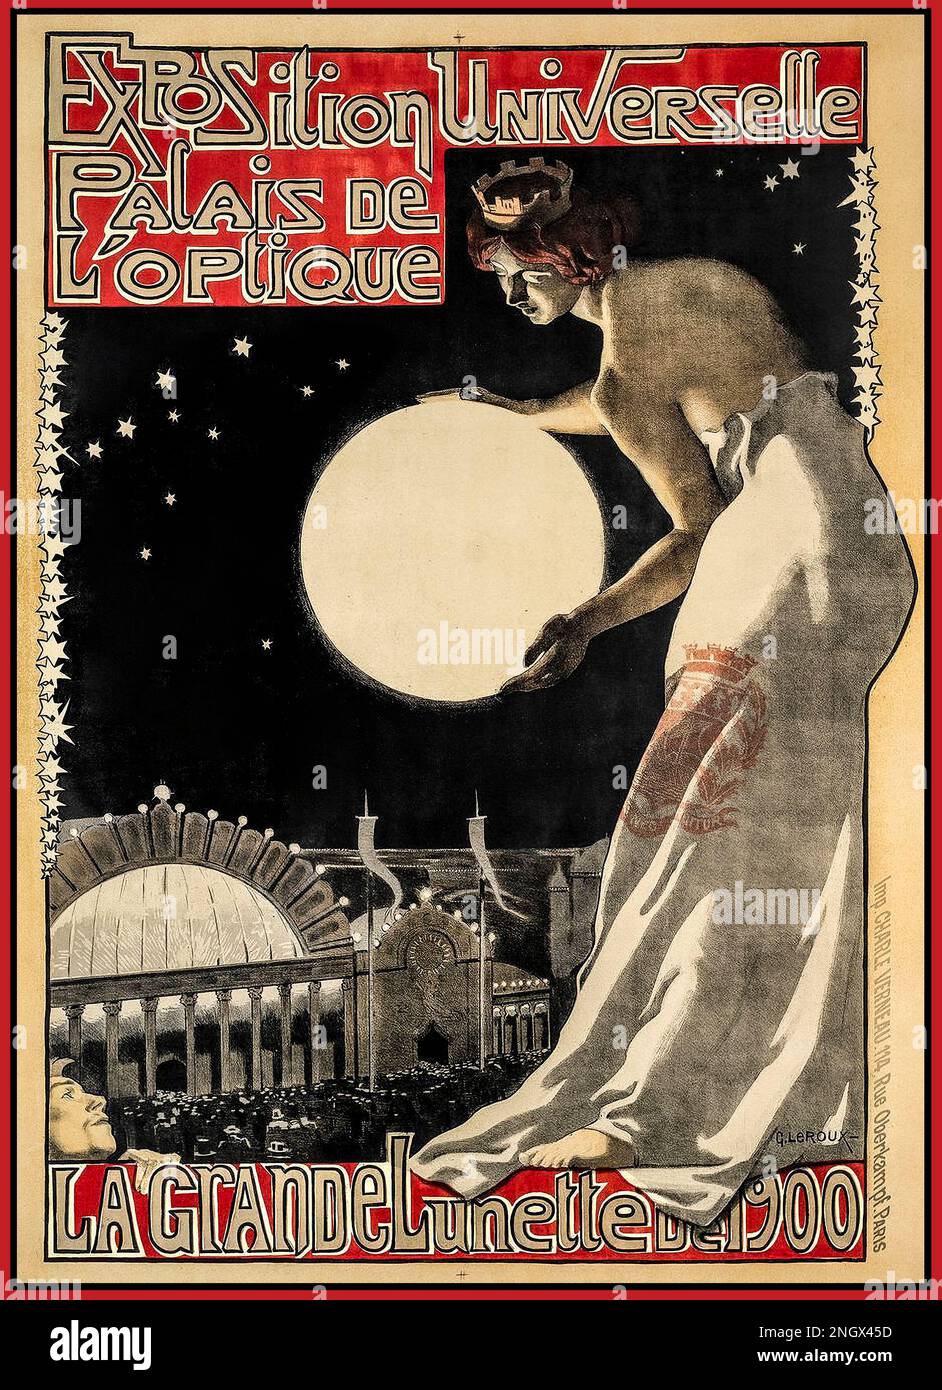 Vintage French Poster Exposition Universelle, La Grande Lunette de 1900, Palais de l'Optique Paris France Stock Photo